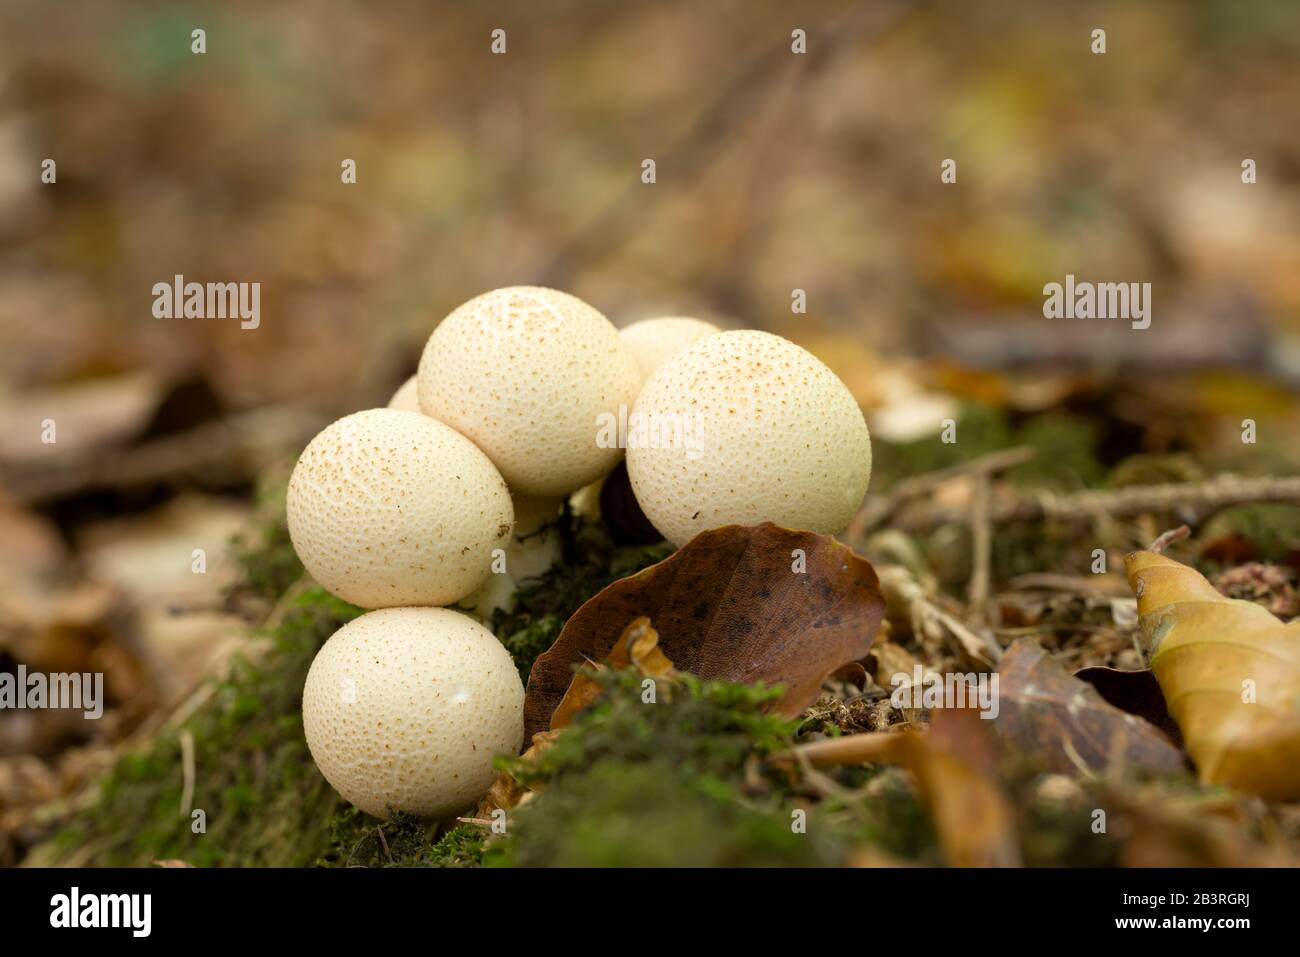 Stumpfe Puffball (Lycoperdon pyriforme) Pilze, die auf Totholz in Blattwurf wachsen. Auch bekannt als Pear-förmiger Puffball. Stockfoto